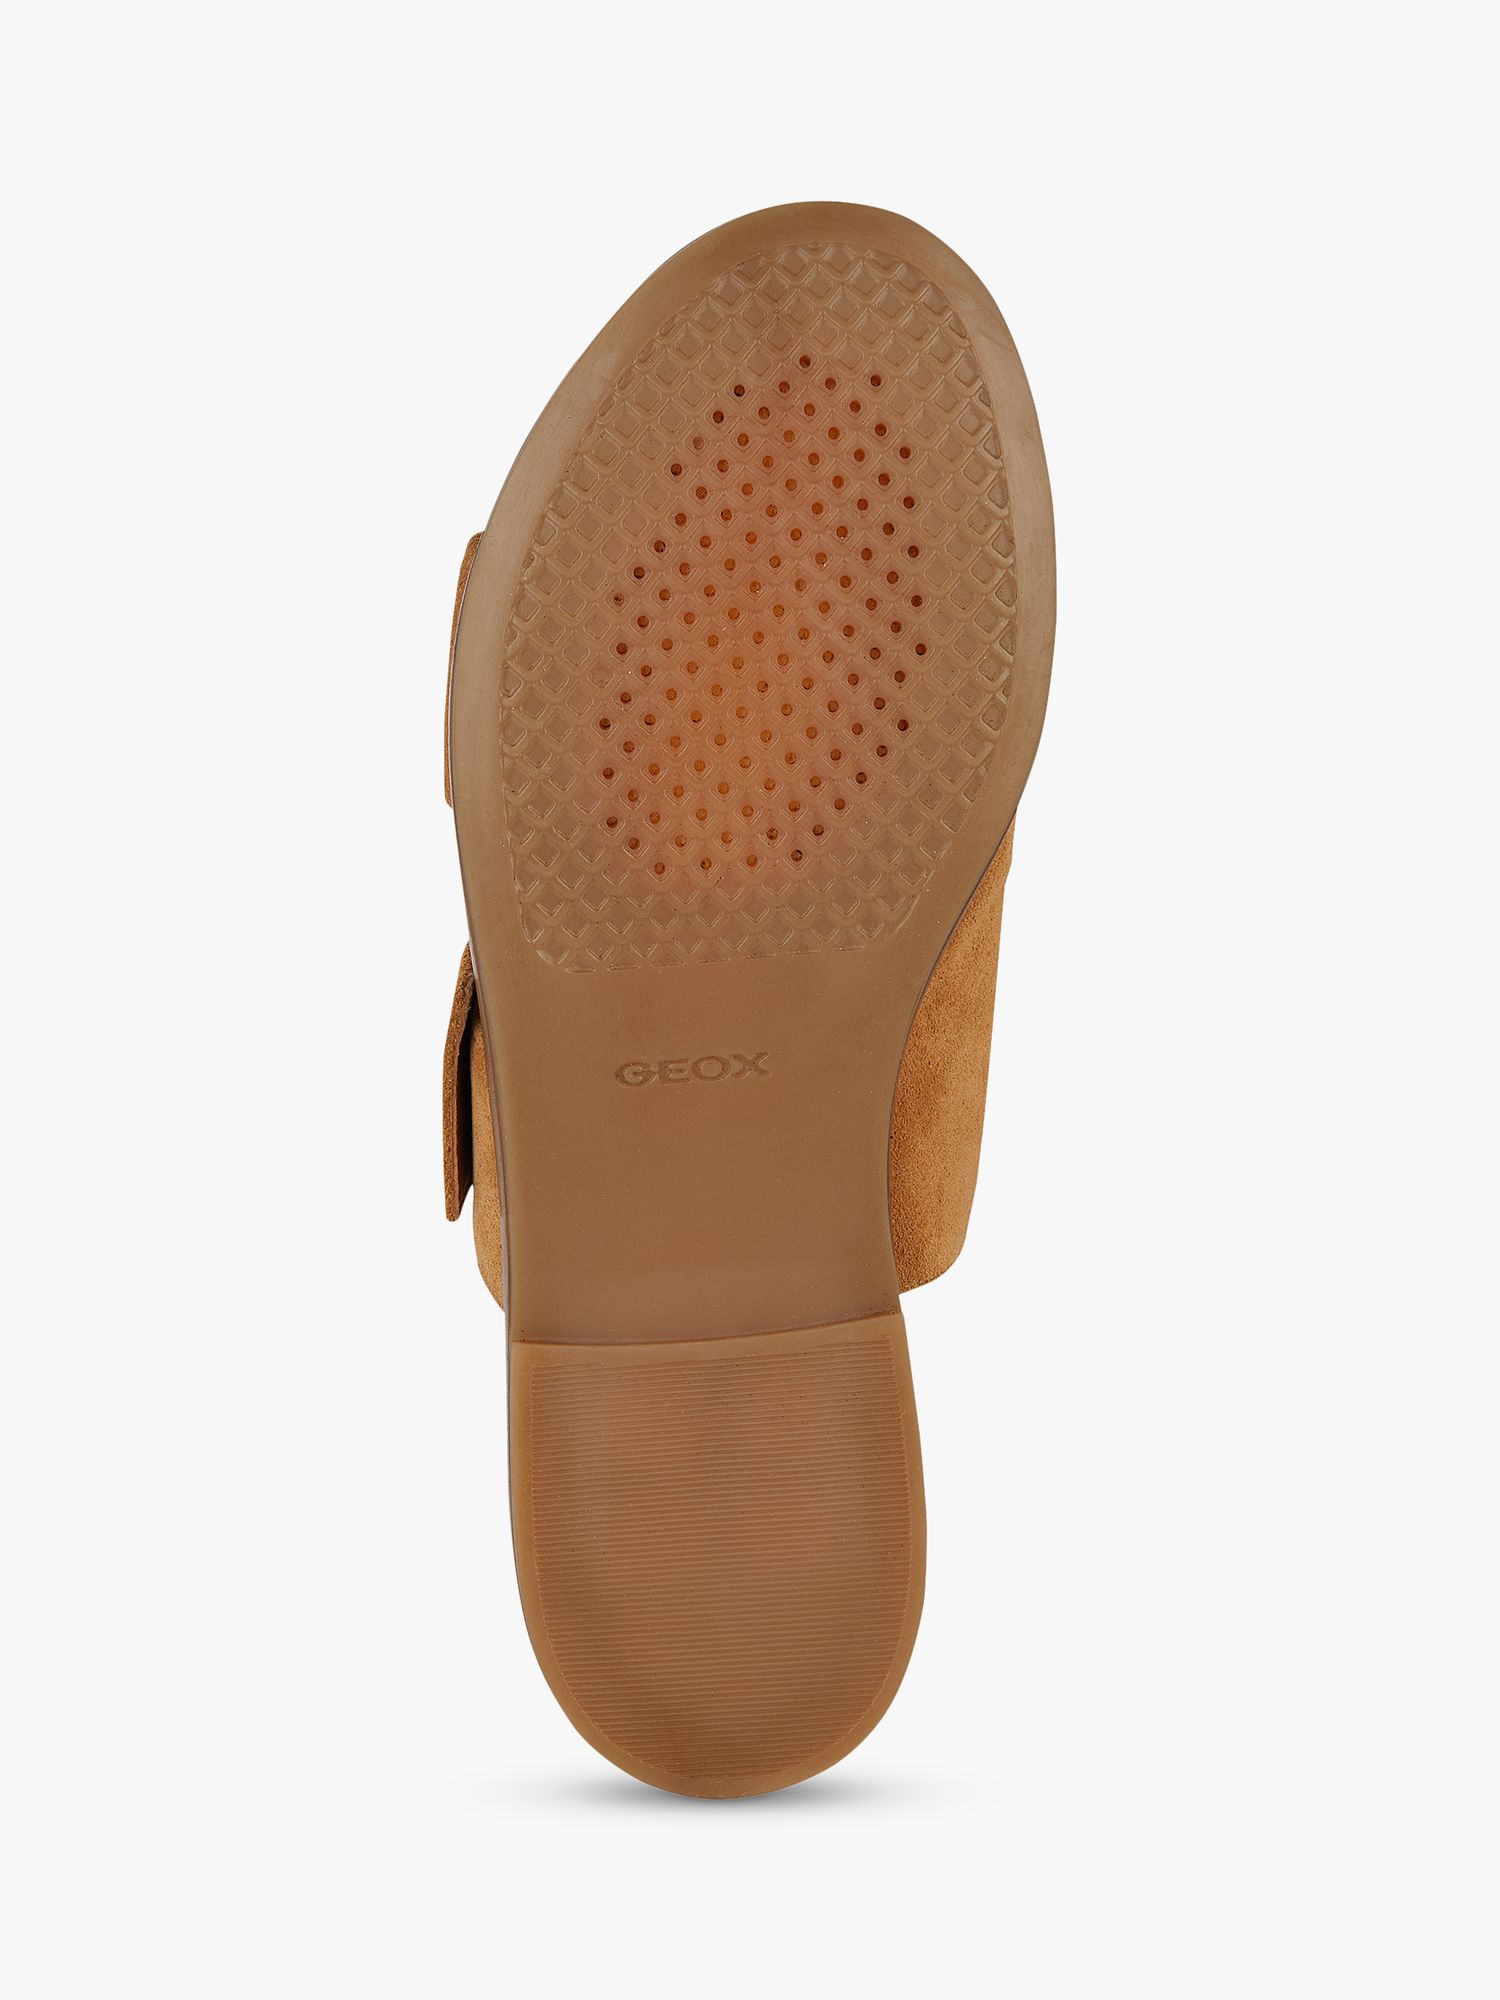 Buy Geox Naileen Suede Flat Sandals, Cognac Online at johnlewis.com